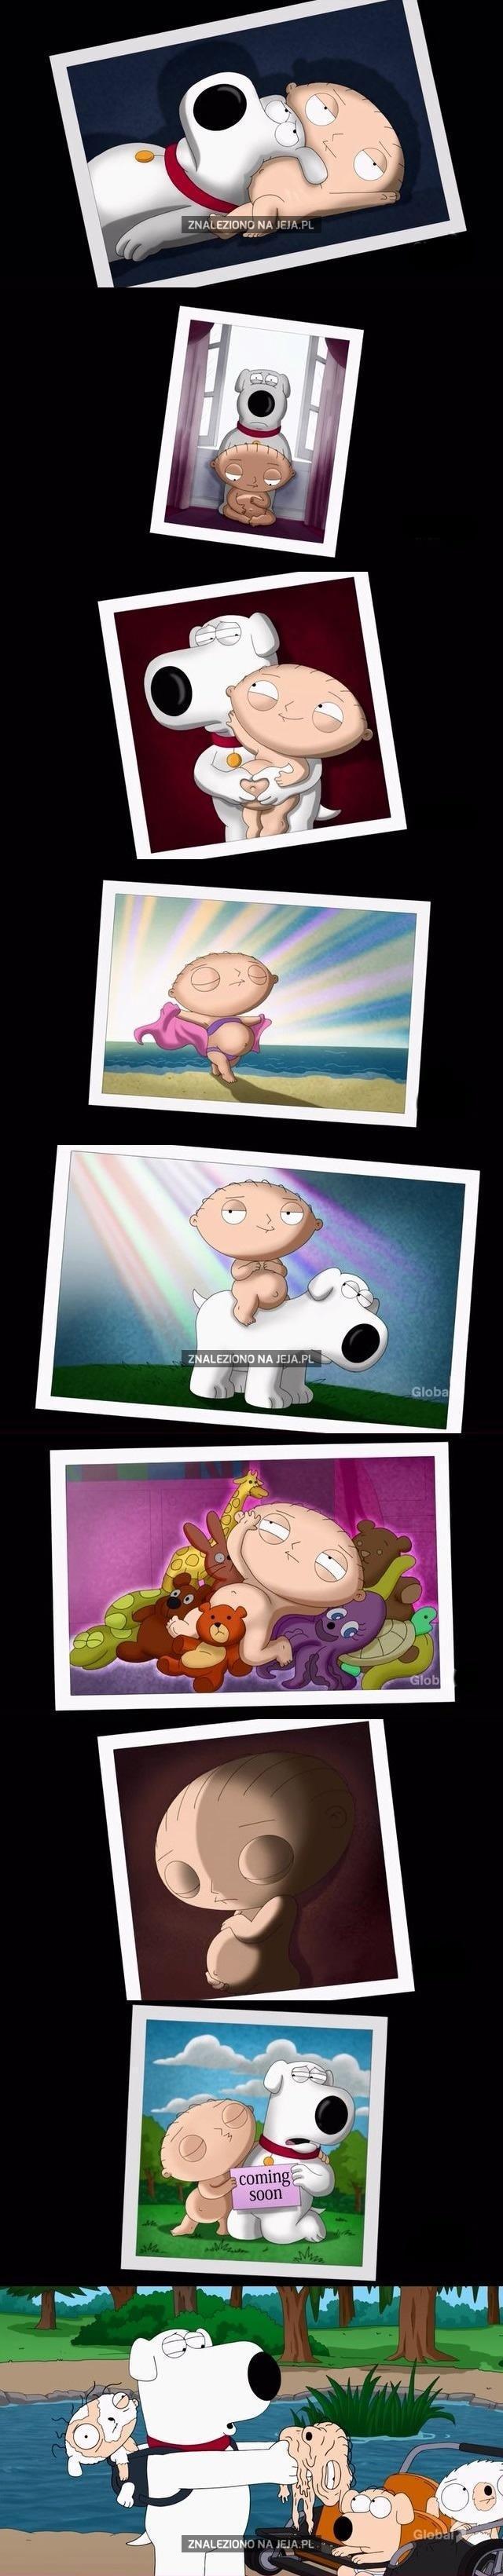 Family Guy... WTF?